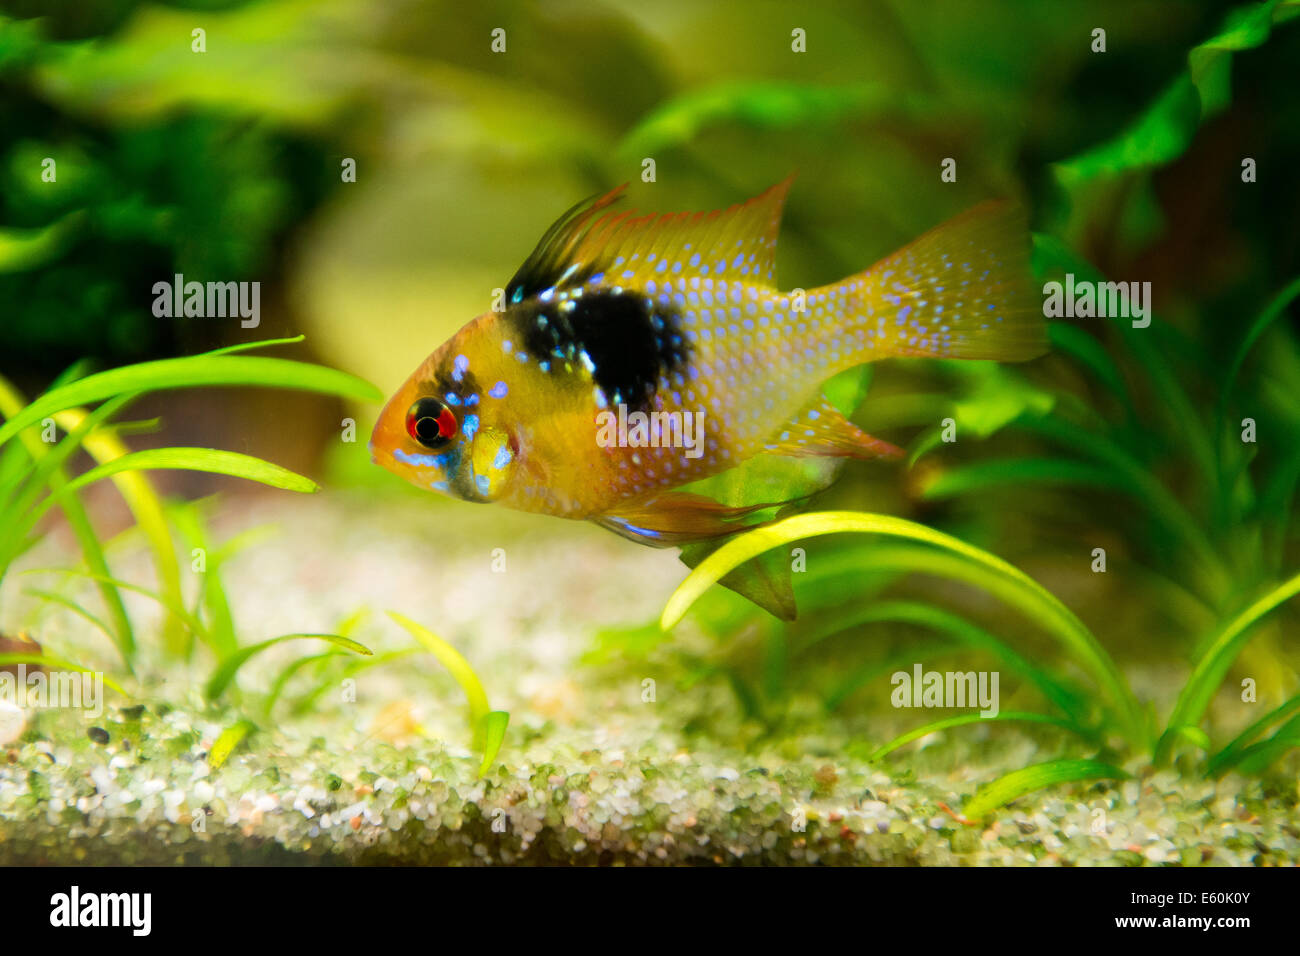 freshwater fish - Mikrogeophagus ramirezi,ram cichlid,male Stock Photo